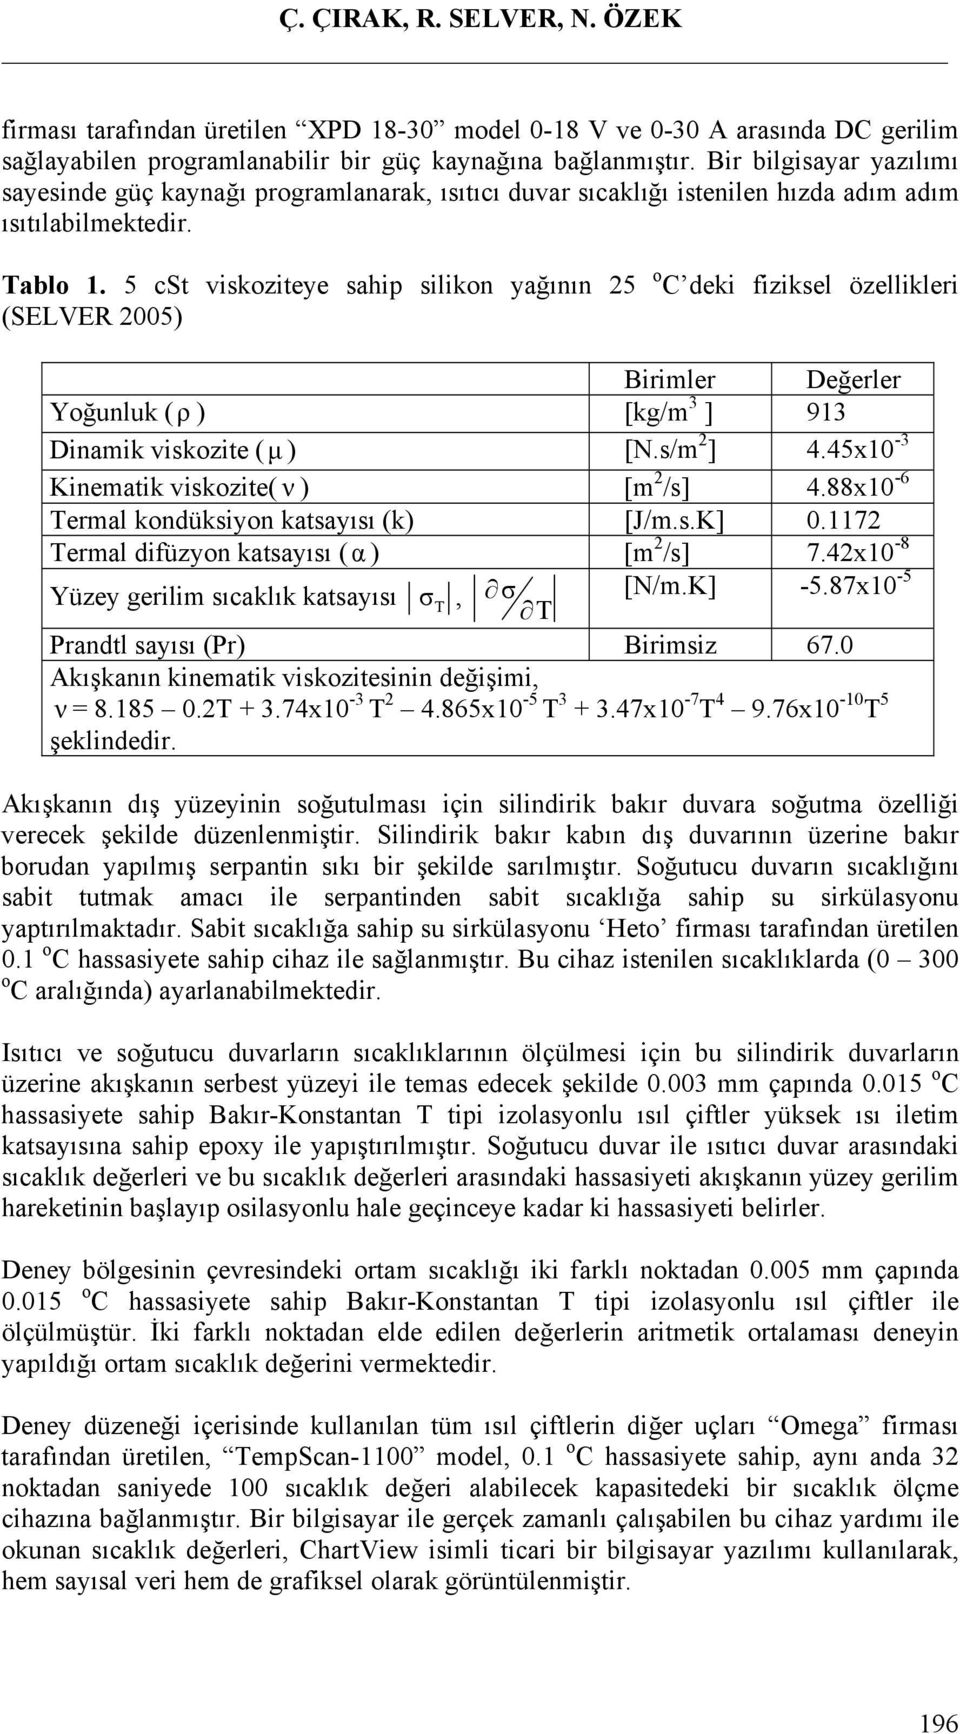 5 cst viskoziteye sahip silikon yağının 25 o deki fiziksel özellikleri (SELVER 2005) Birimler Değerler Yoğunluk (ρ ) [kg/m 3 ] 913 Dinamik viskozite (μ ) [N.s/m 2 ] 4.